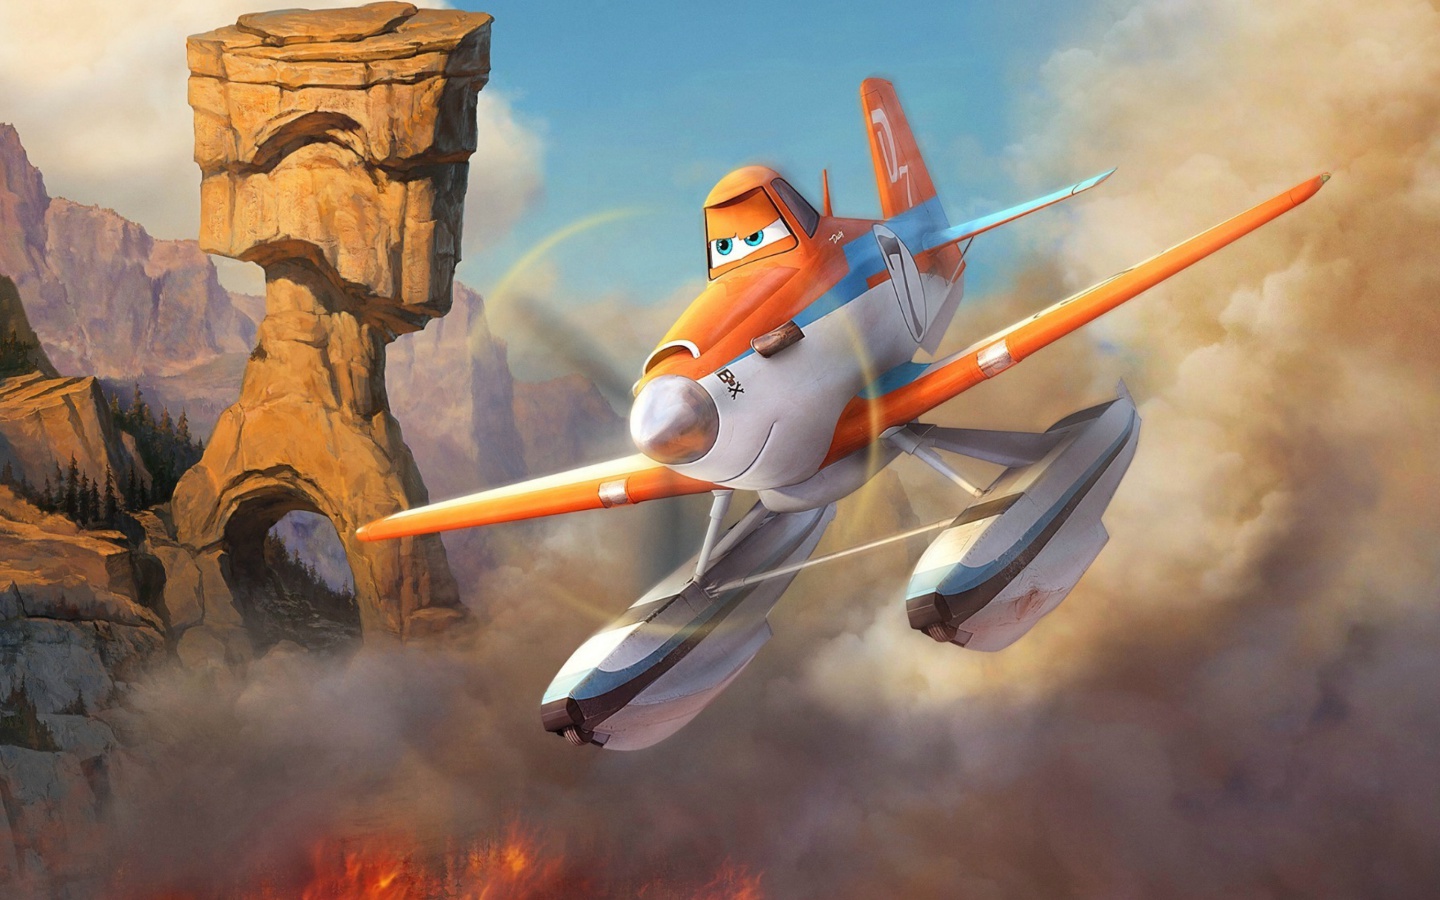 Fondo de pantalla Planes Fire and Rescue 2014 1440x900